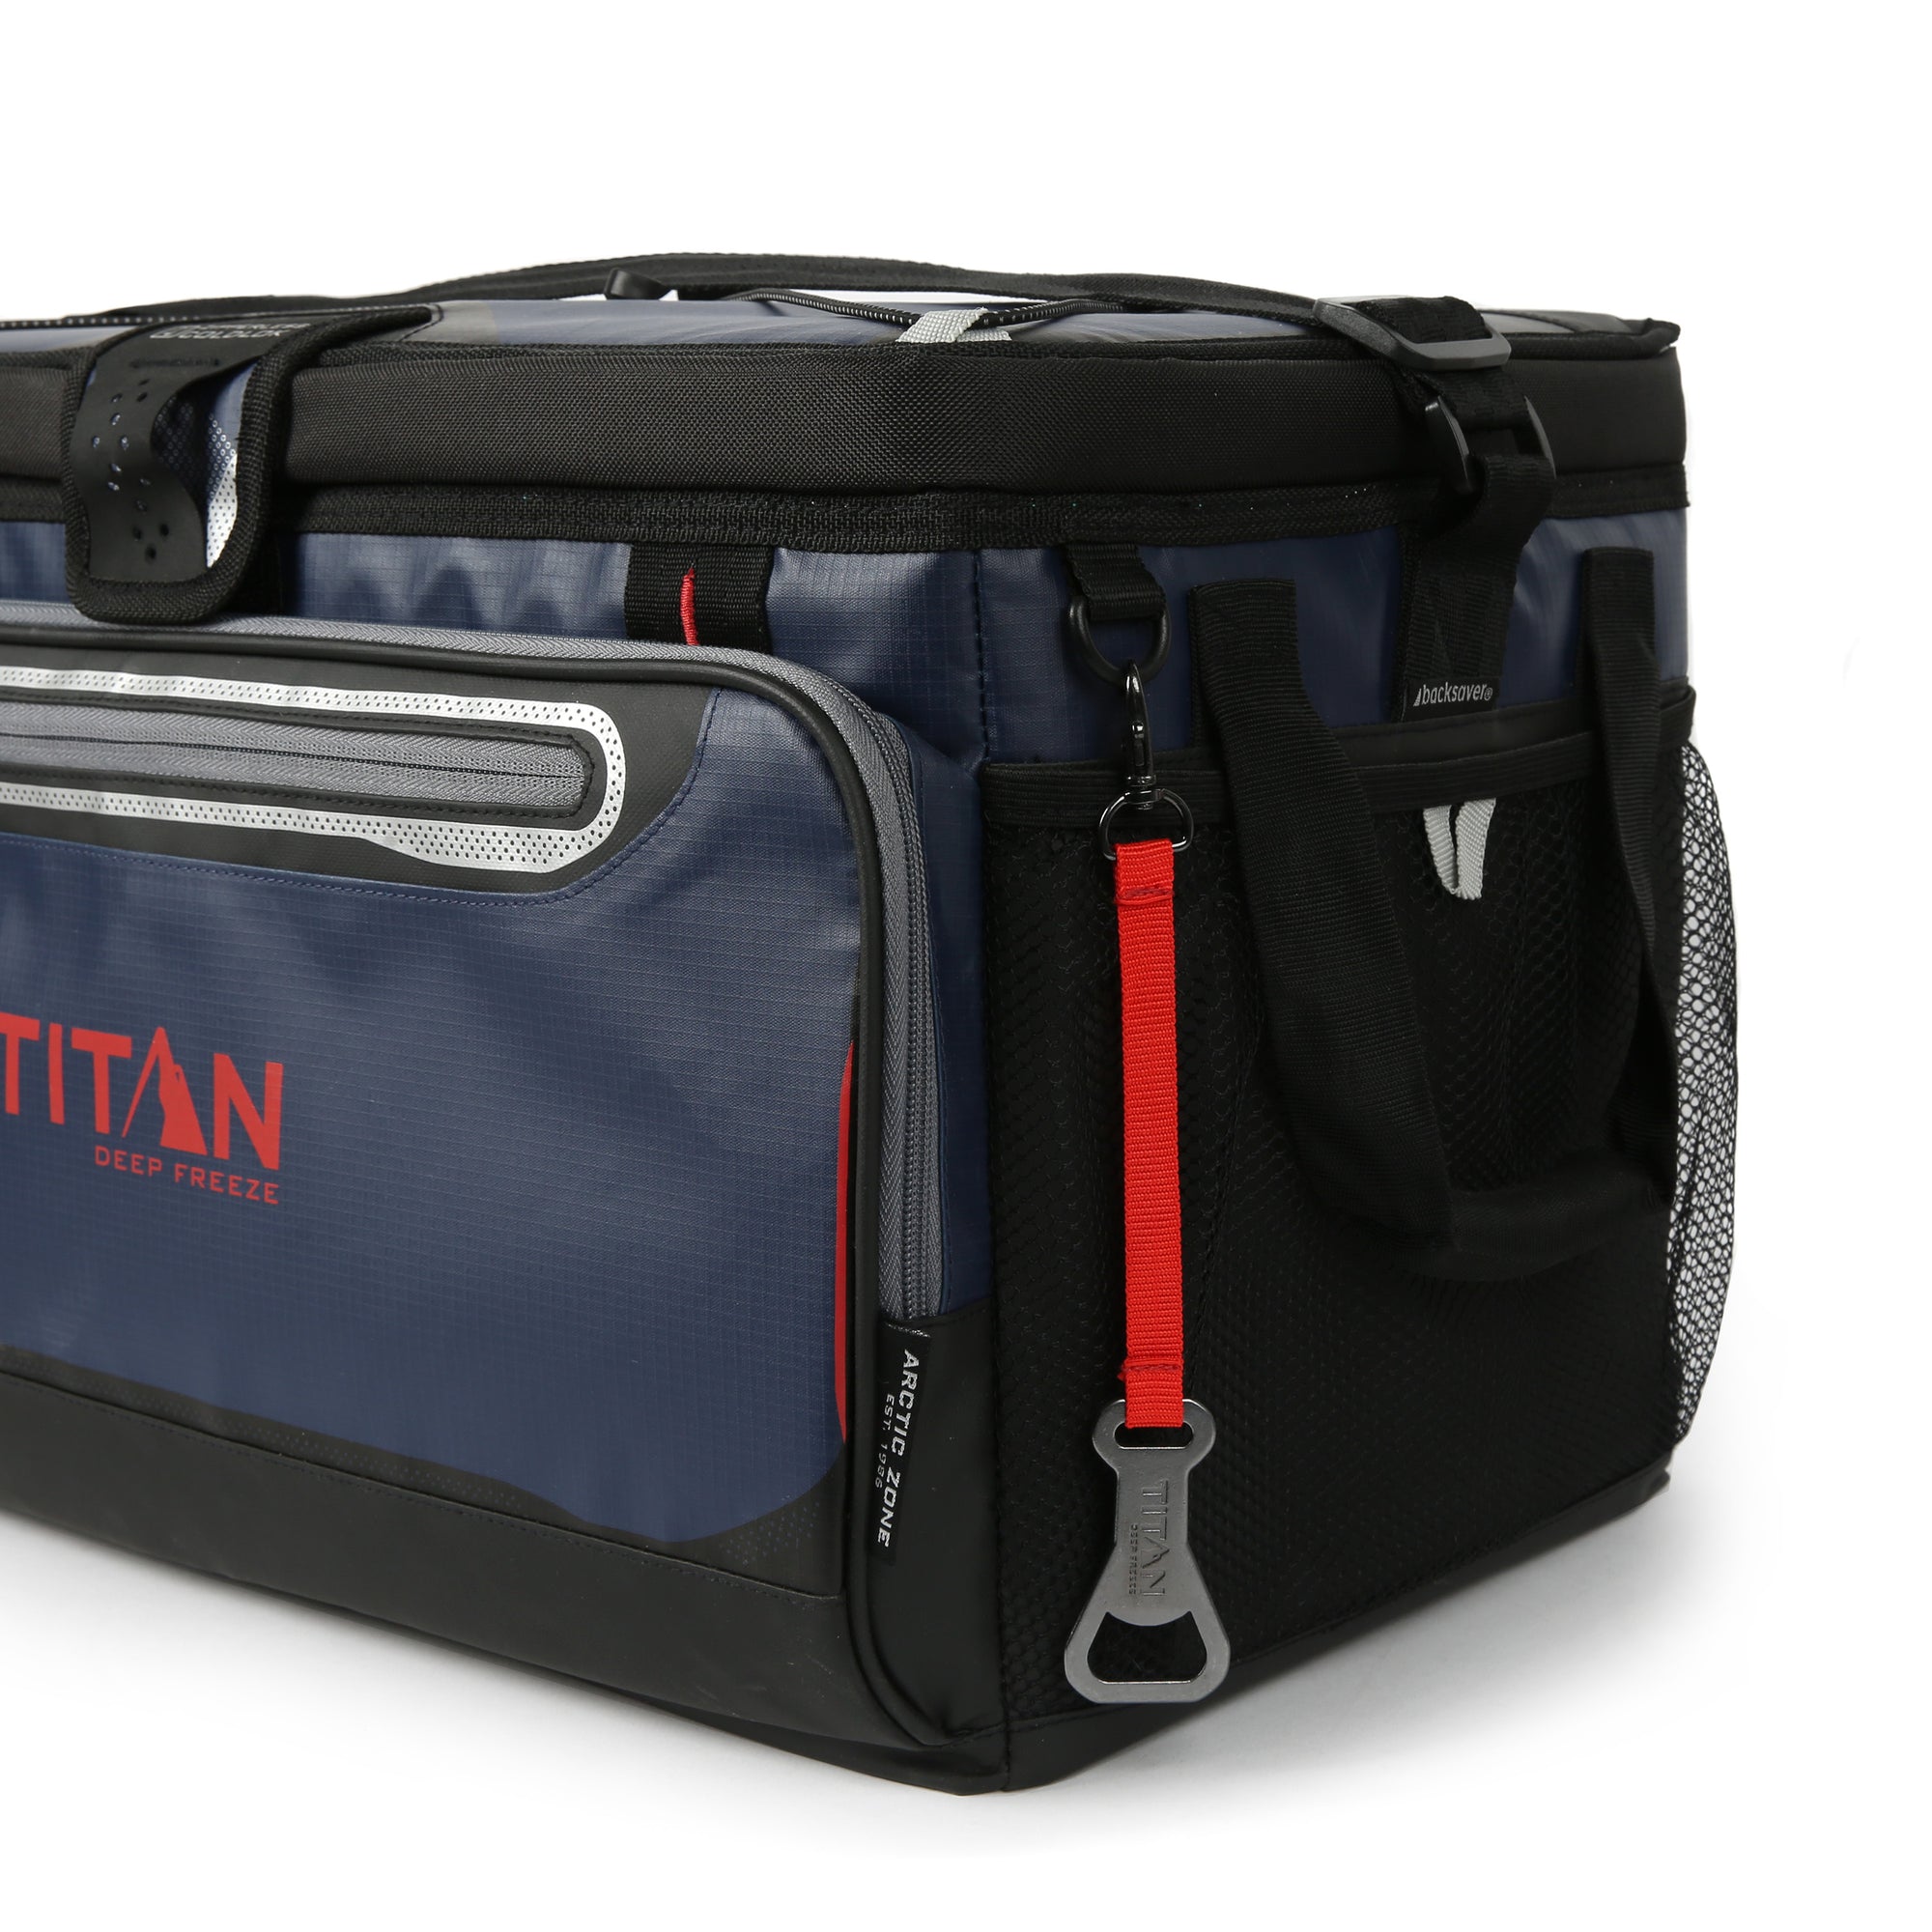 titan zipperless cooler 48 can